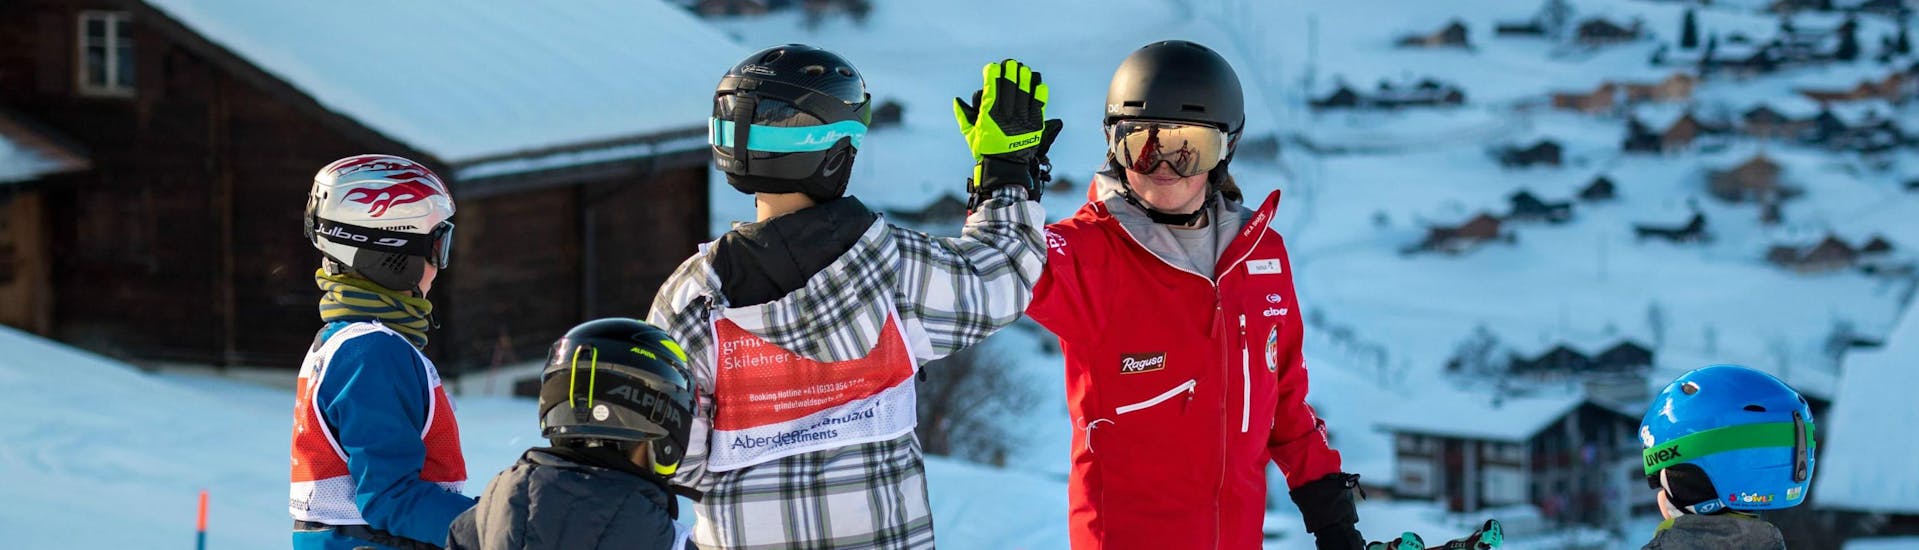 Un grupo de jóvenes esquiadores se divierten durante sus clases de esquí para niños de nivel intermedio con la Grindelwald Ski School y chocan los cinco con su instructor.